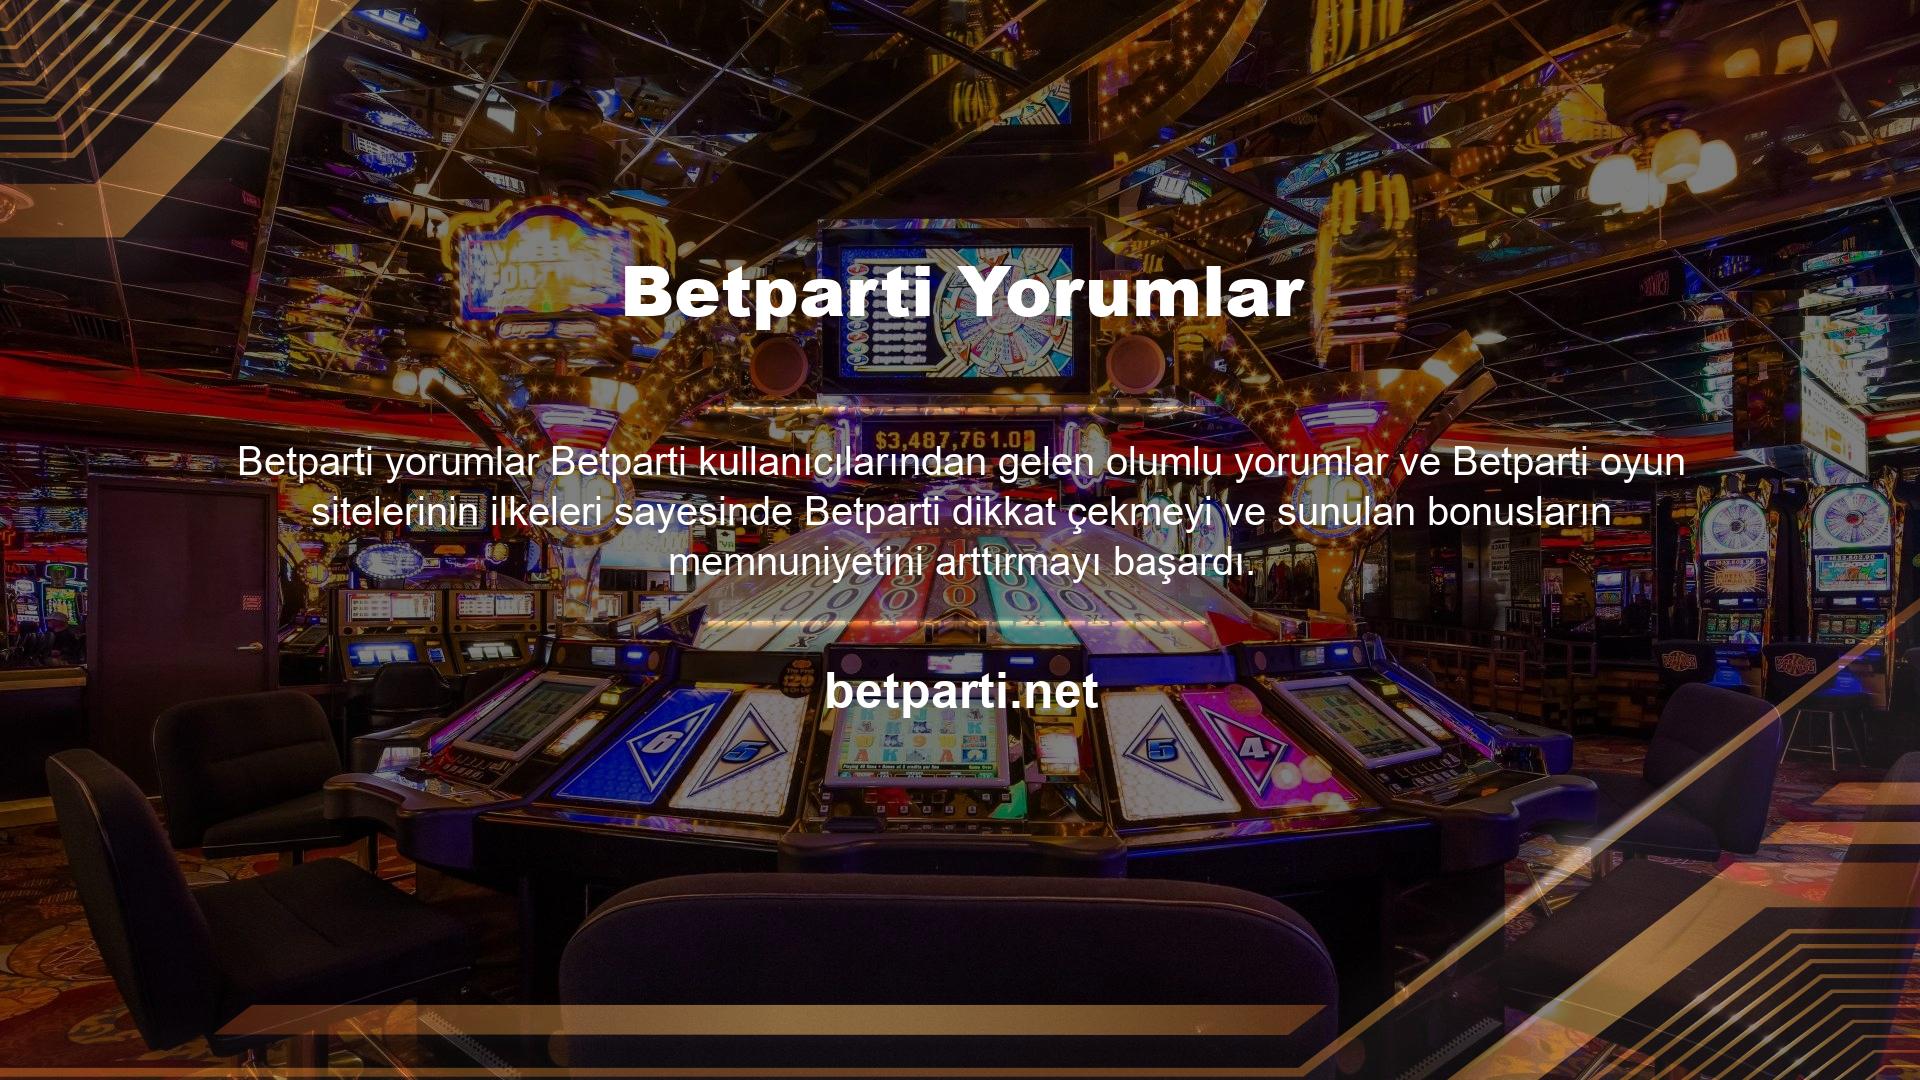 Betparti güçlü bir mali güce sahip olmasına rağmen hizmet anlayışı tamamen kullanıcı memnuniyetine dayalıdır ve üyeleri için şu anda en aktif oyun sitelerinden biridir